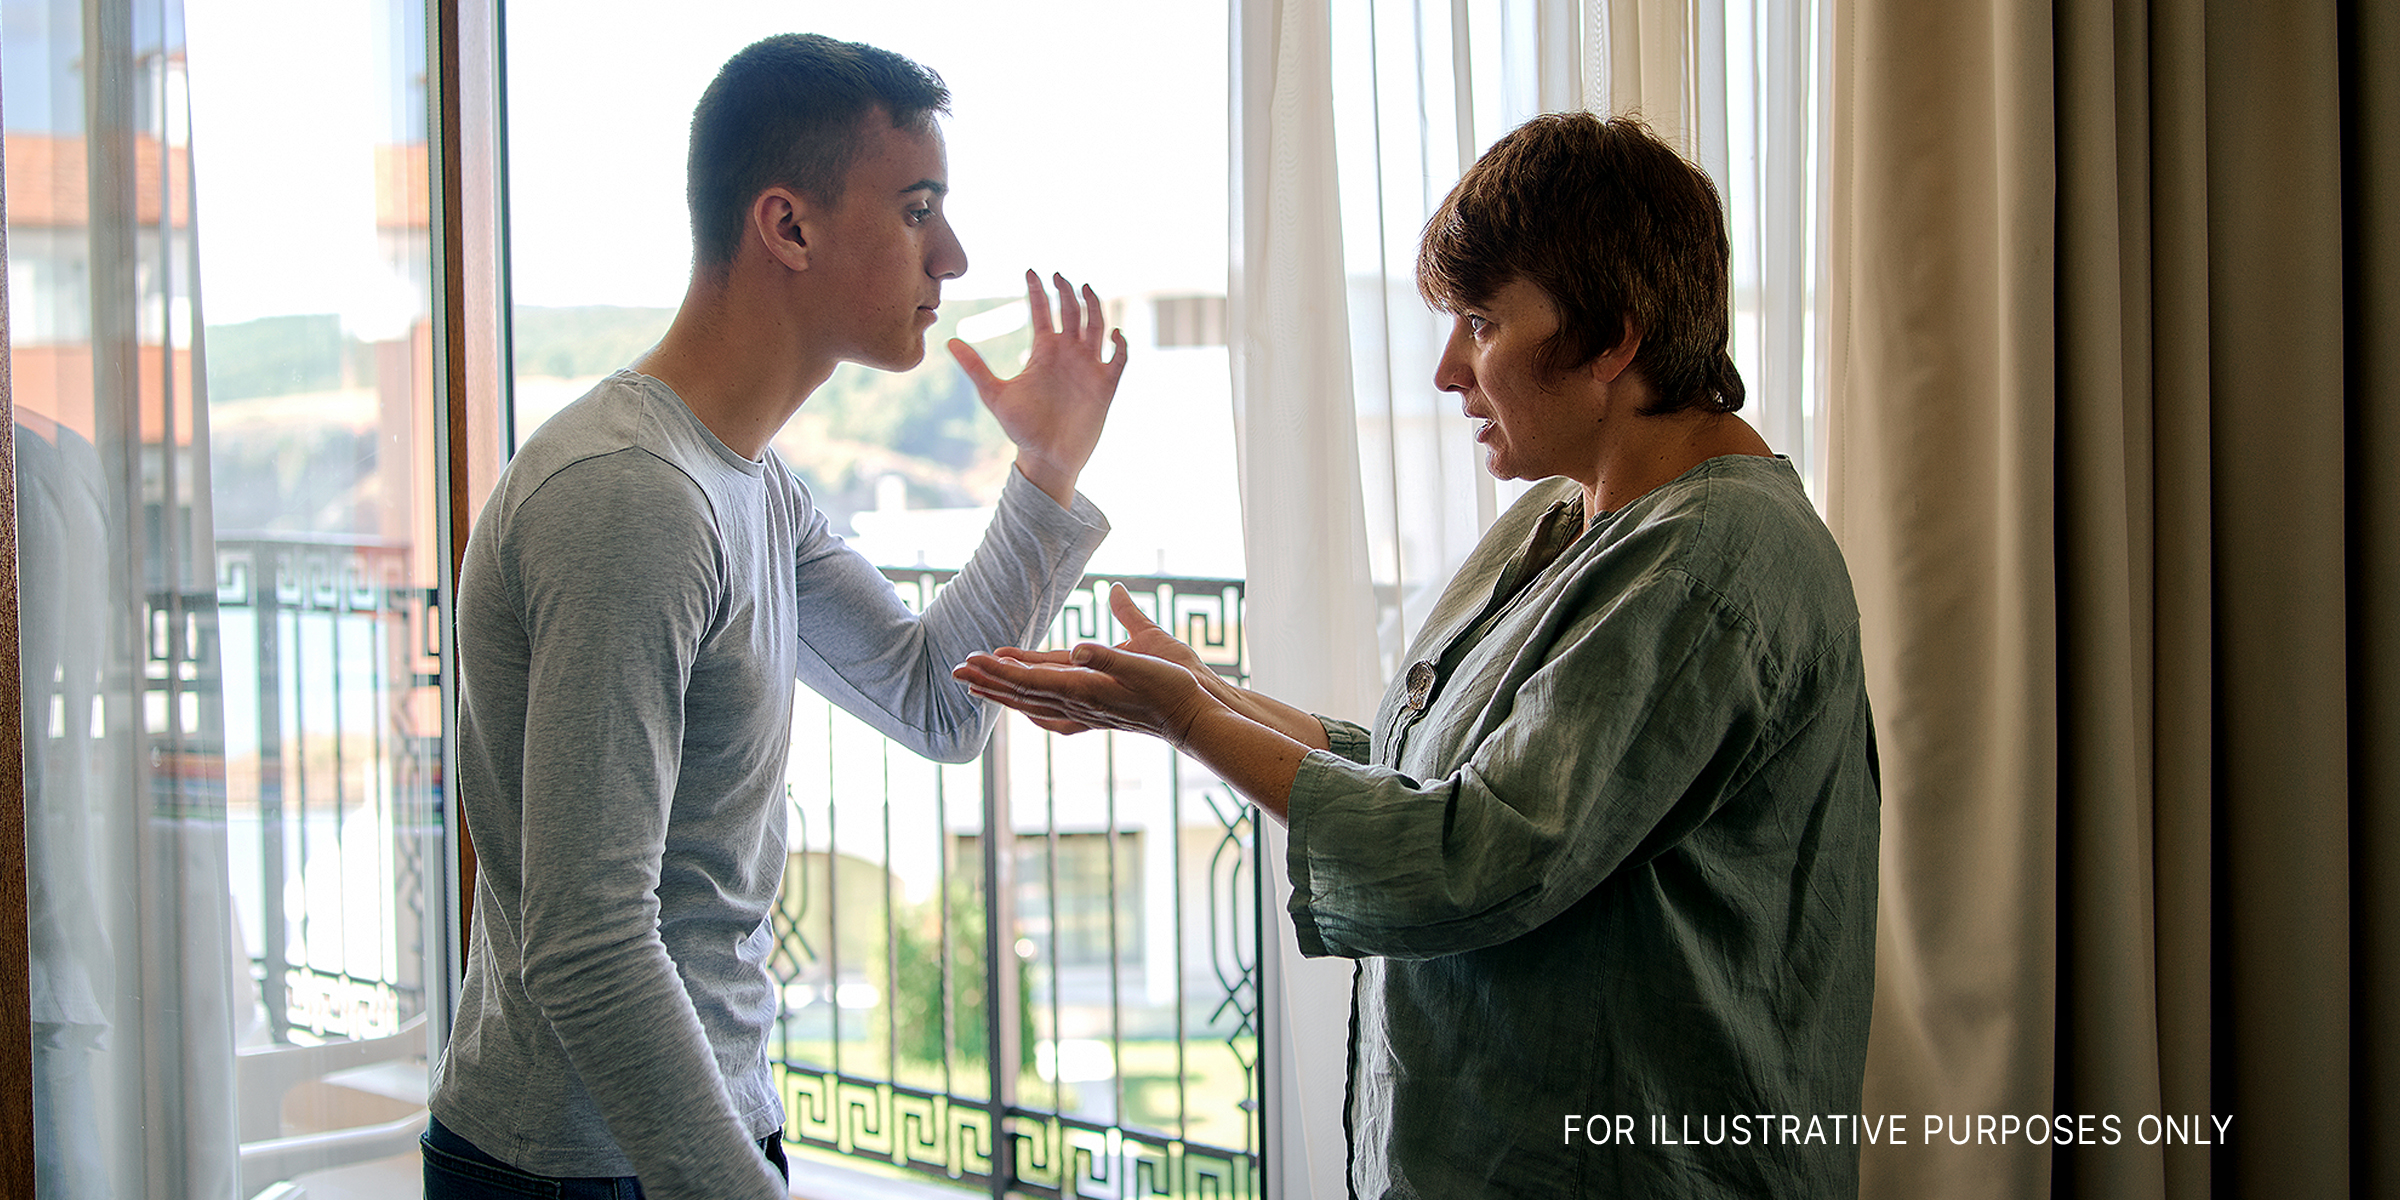 Mutter streitet mit jugendlichem Sohn | Quelle: Getty Images